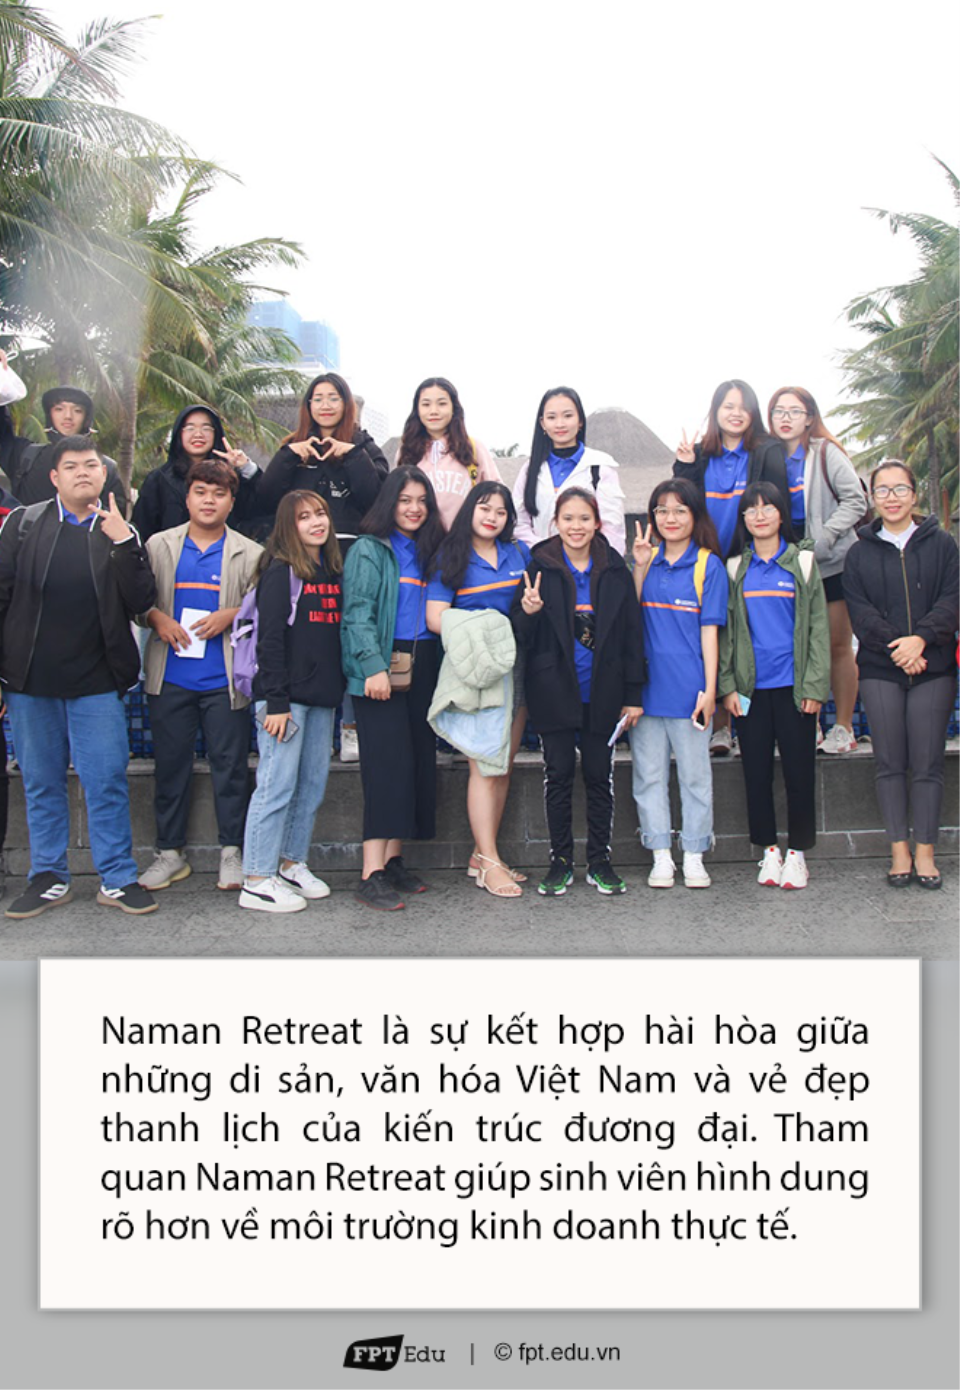 ĐH Greenwich tổ chức chương trình học cùng trải nghiệm Fieltrip cho các sinh viên ngành Marketing tại Naman Retreat Đà Nẵng